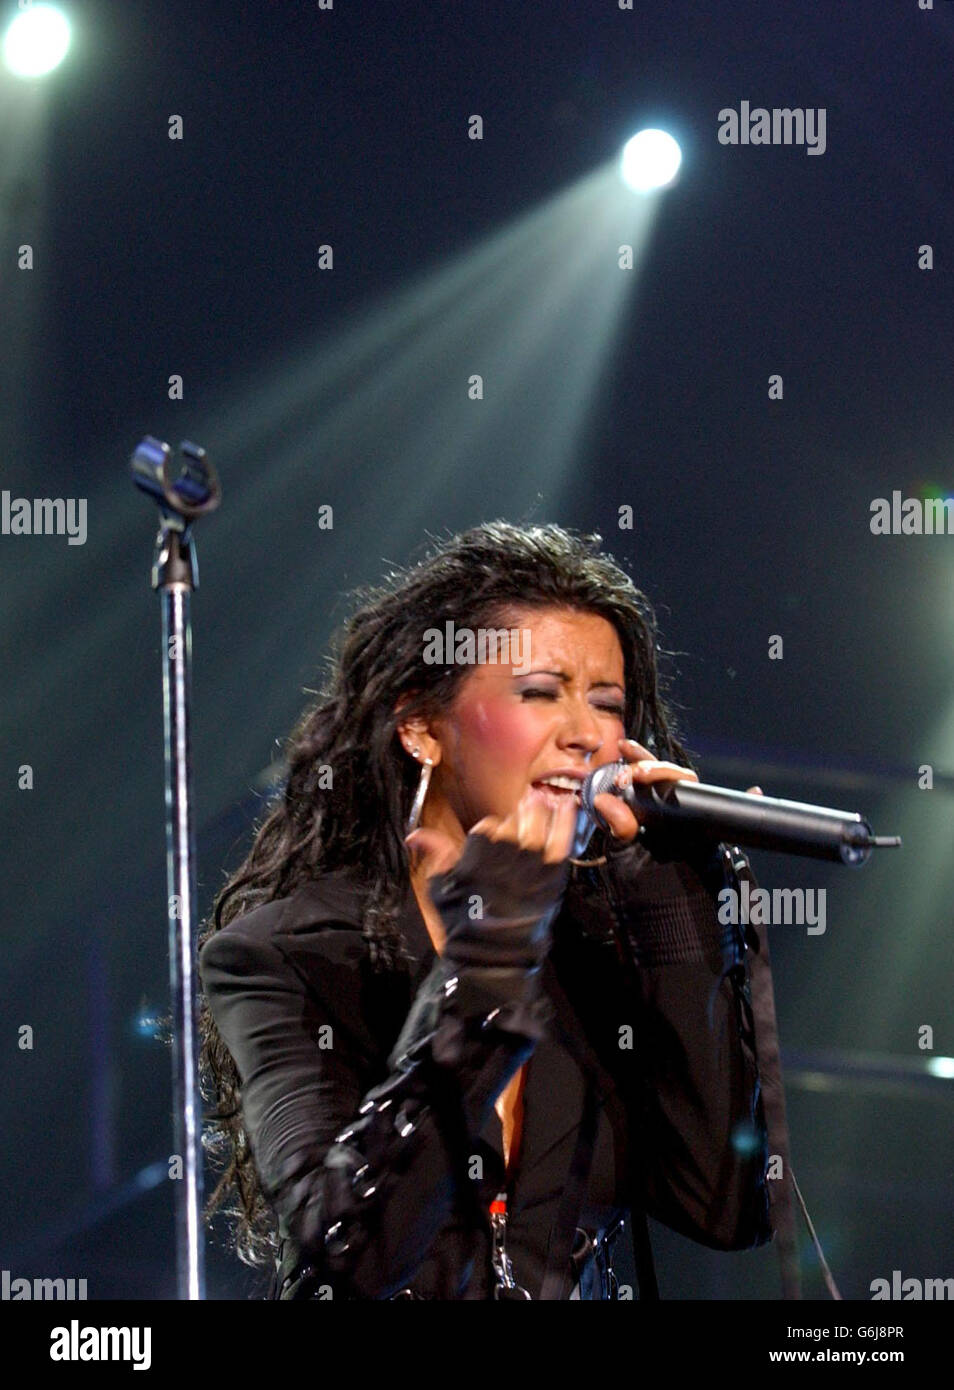 La cantante americana Christina Aguilera sul palco durante il suo concerto, presso la NEC Arena di Birmingham. Foto Stock